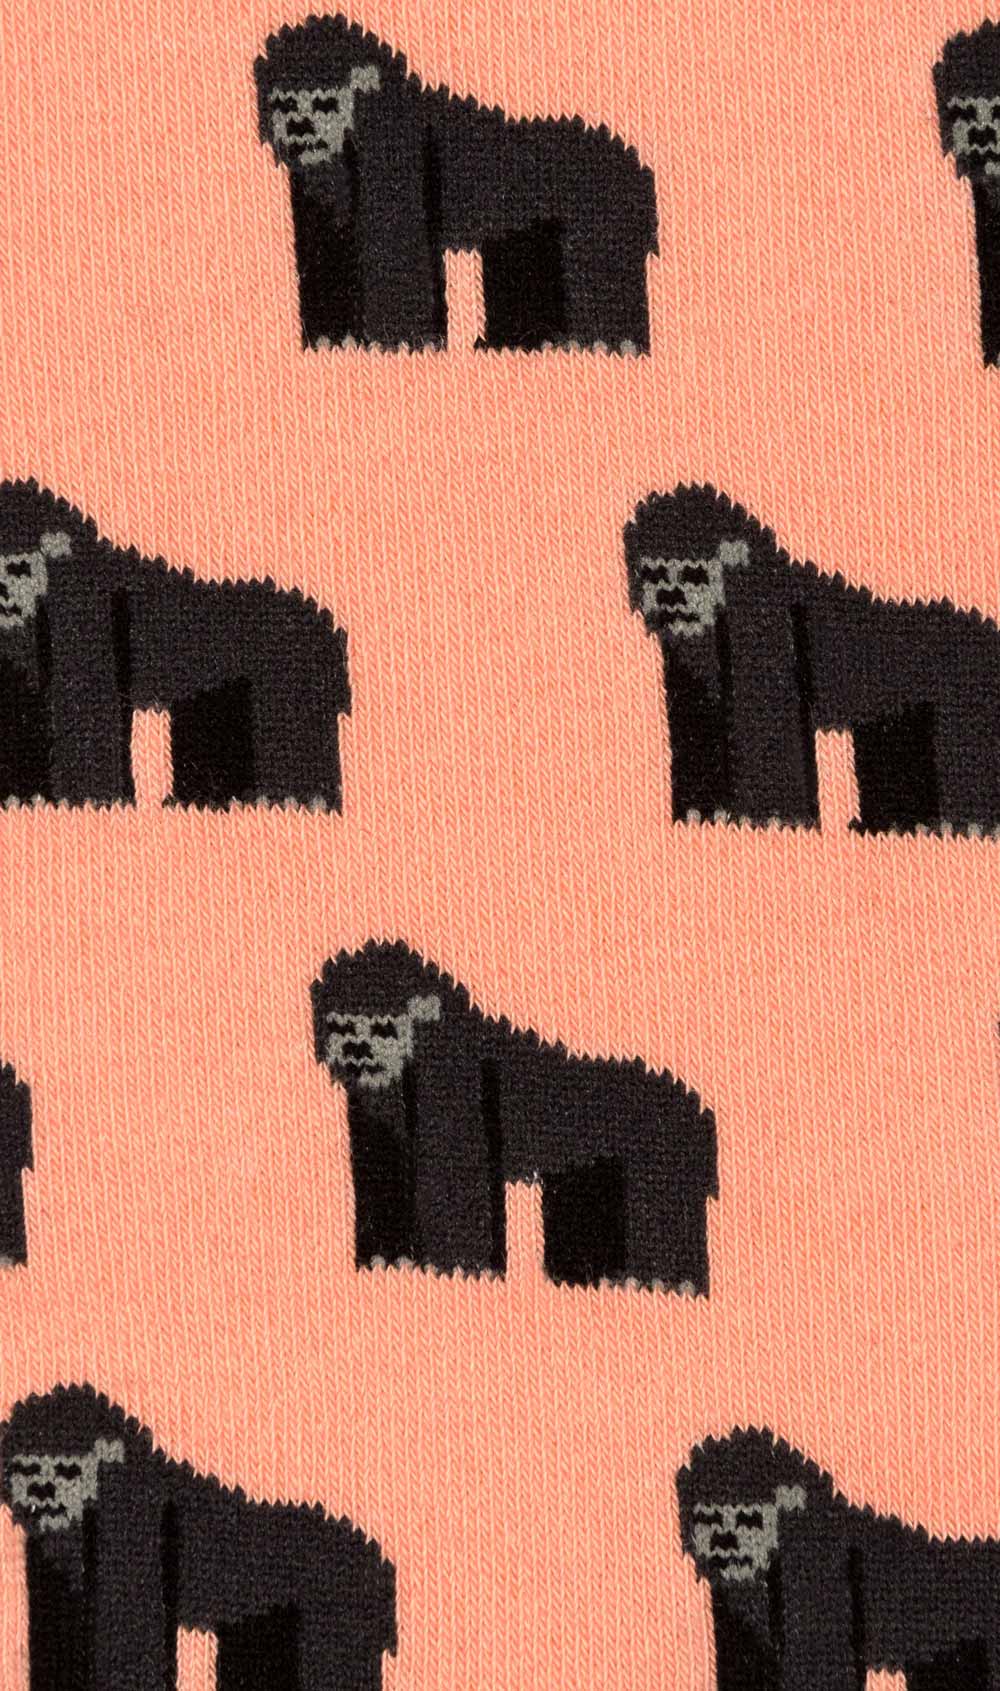 Harambe Gorilla Socks Fabric